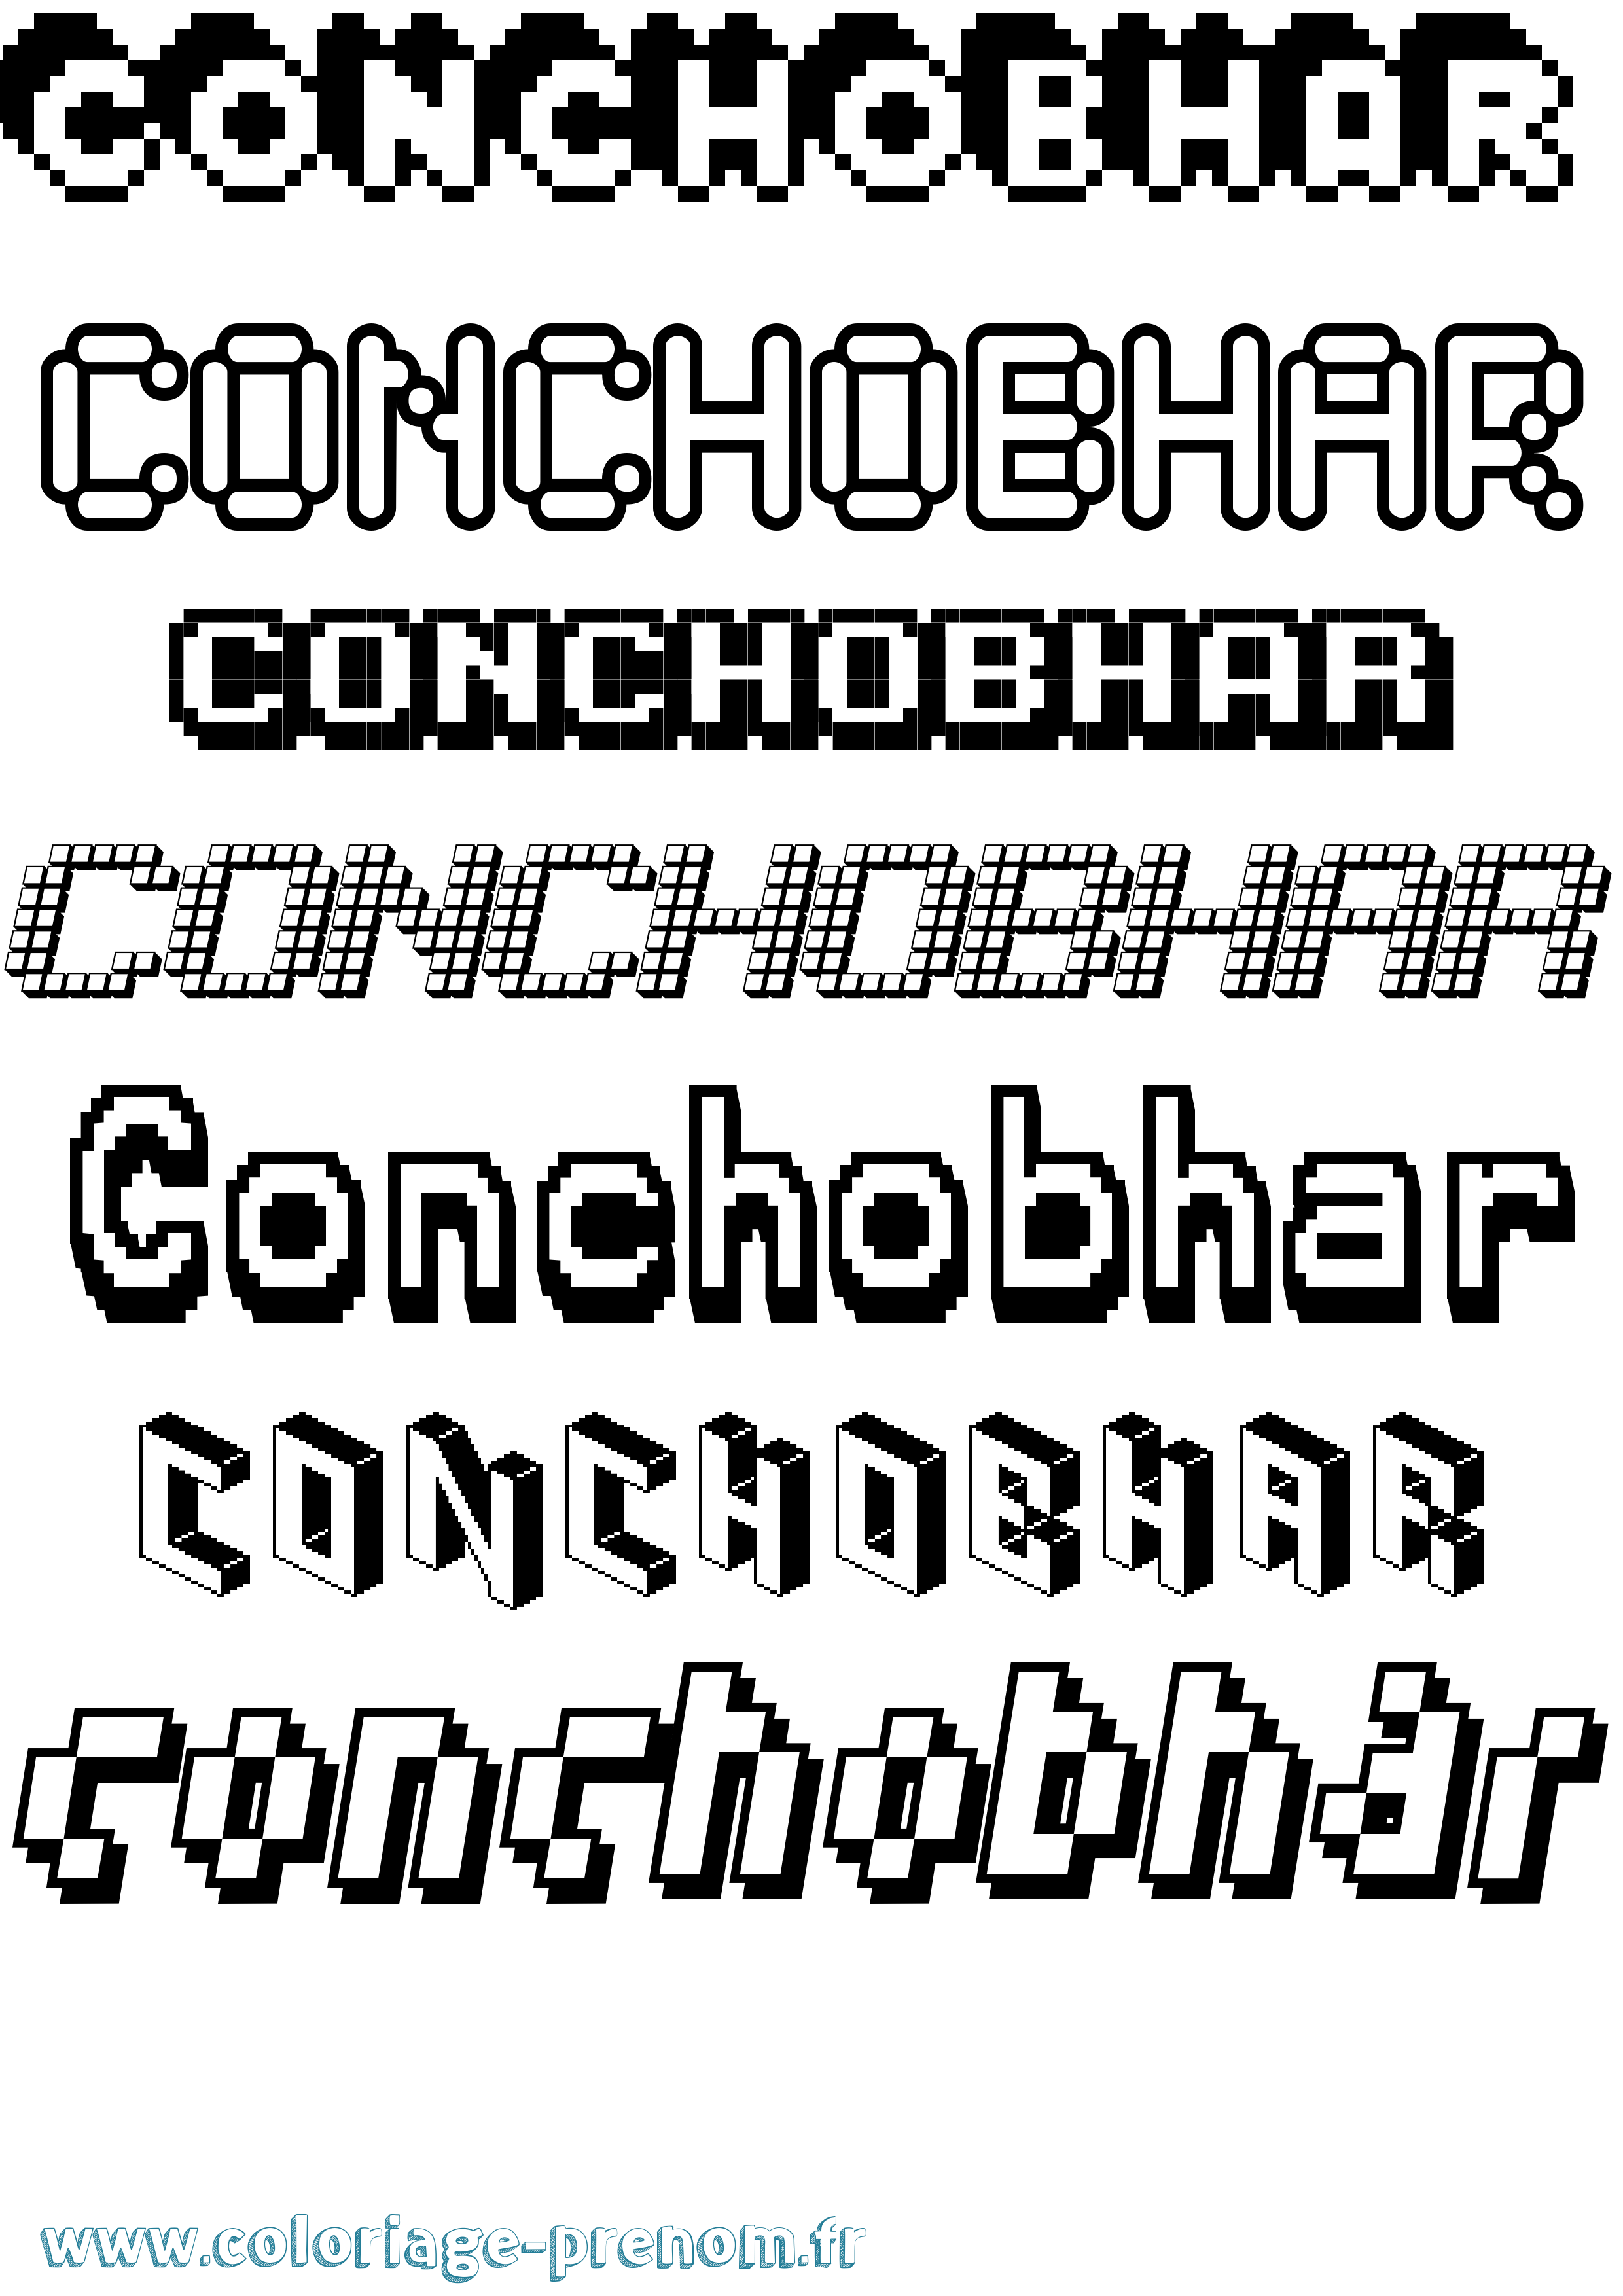 Coloriage prénom Conchobhar Pixel